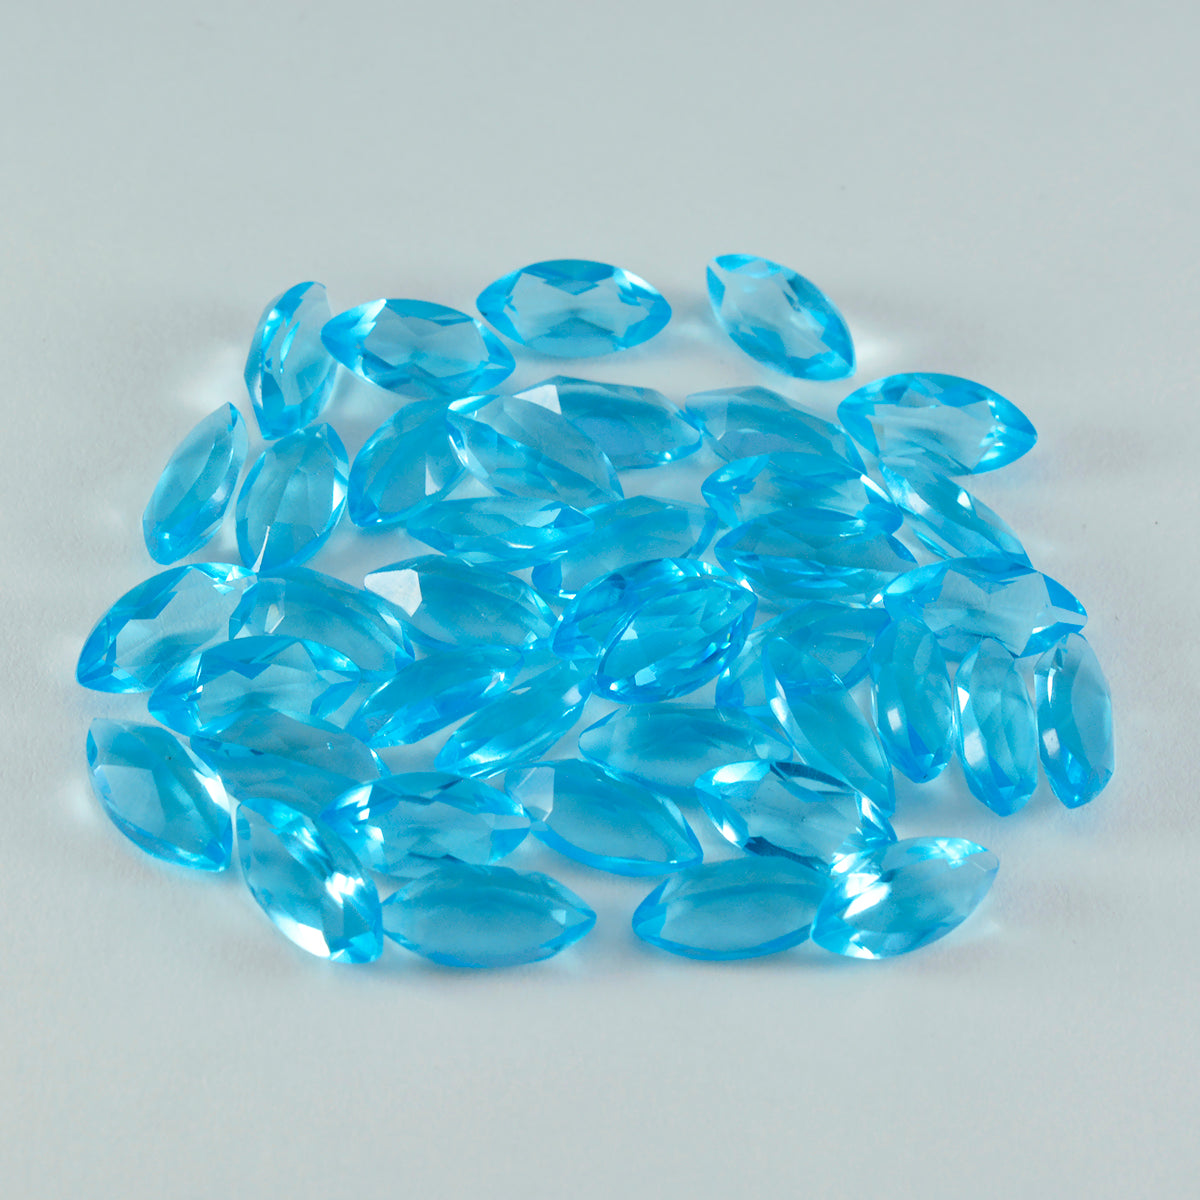 riyogems 1шт голубой топаз cz ограненный 7x14 мм форма маркиза качественный драгоценный камень